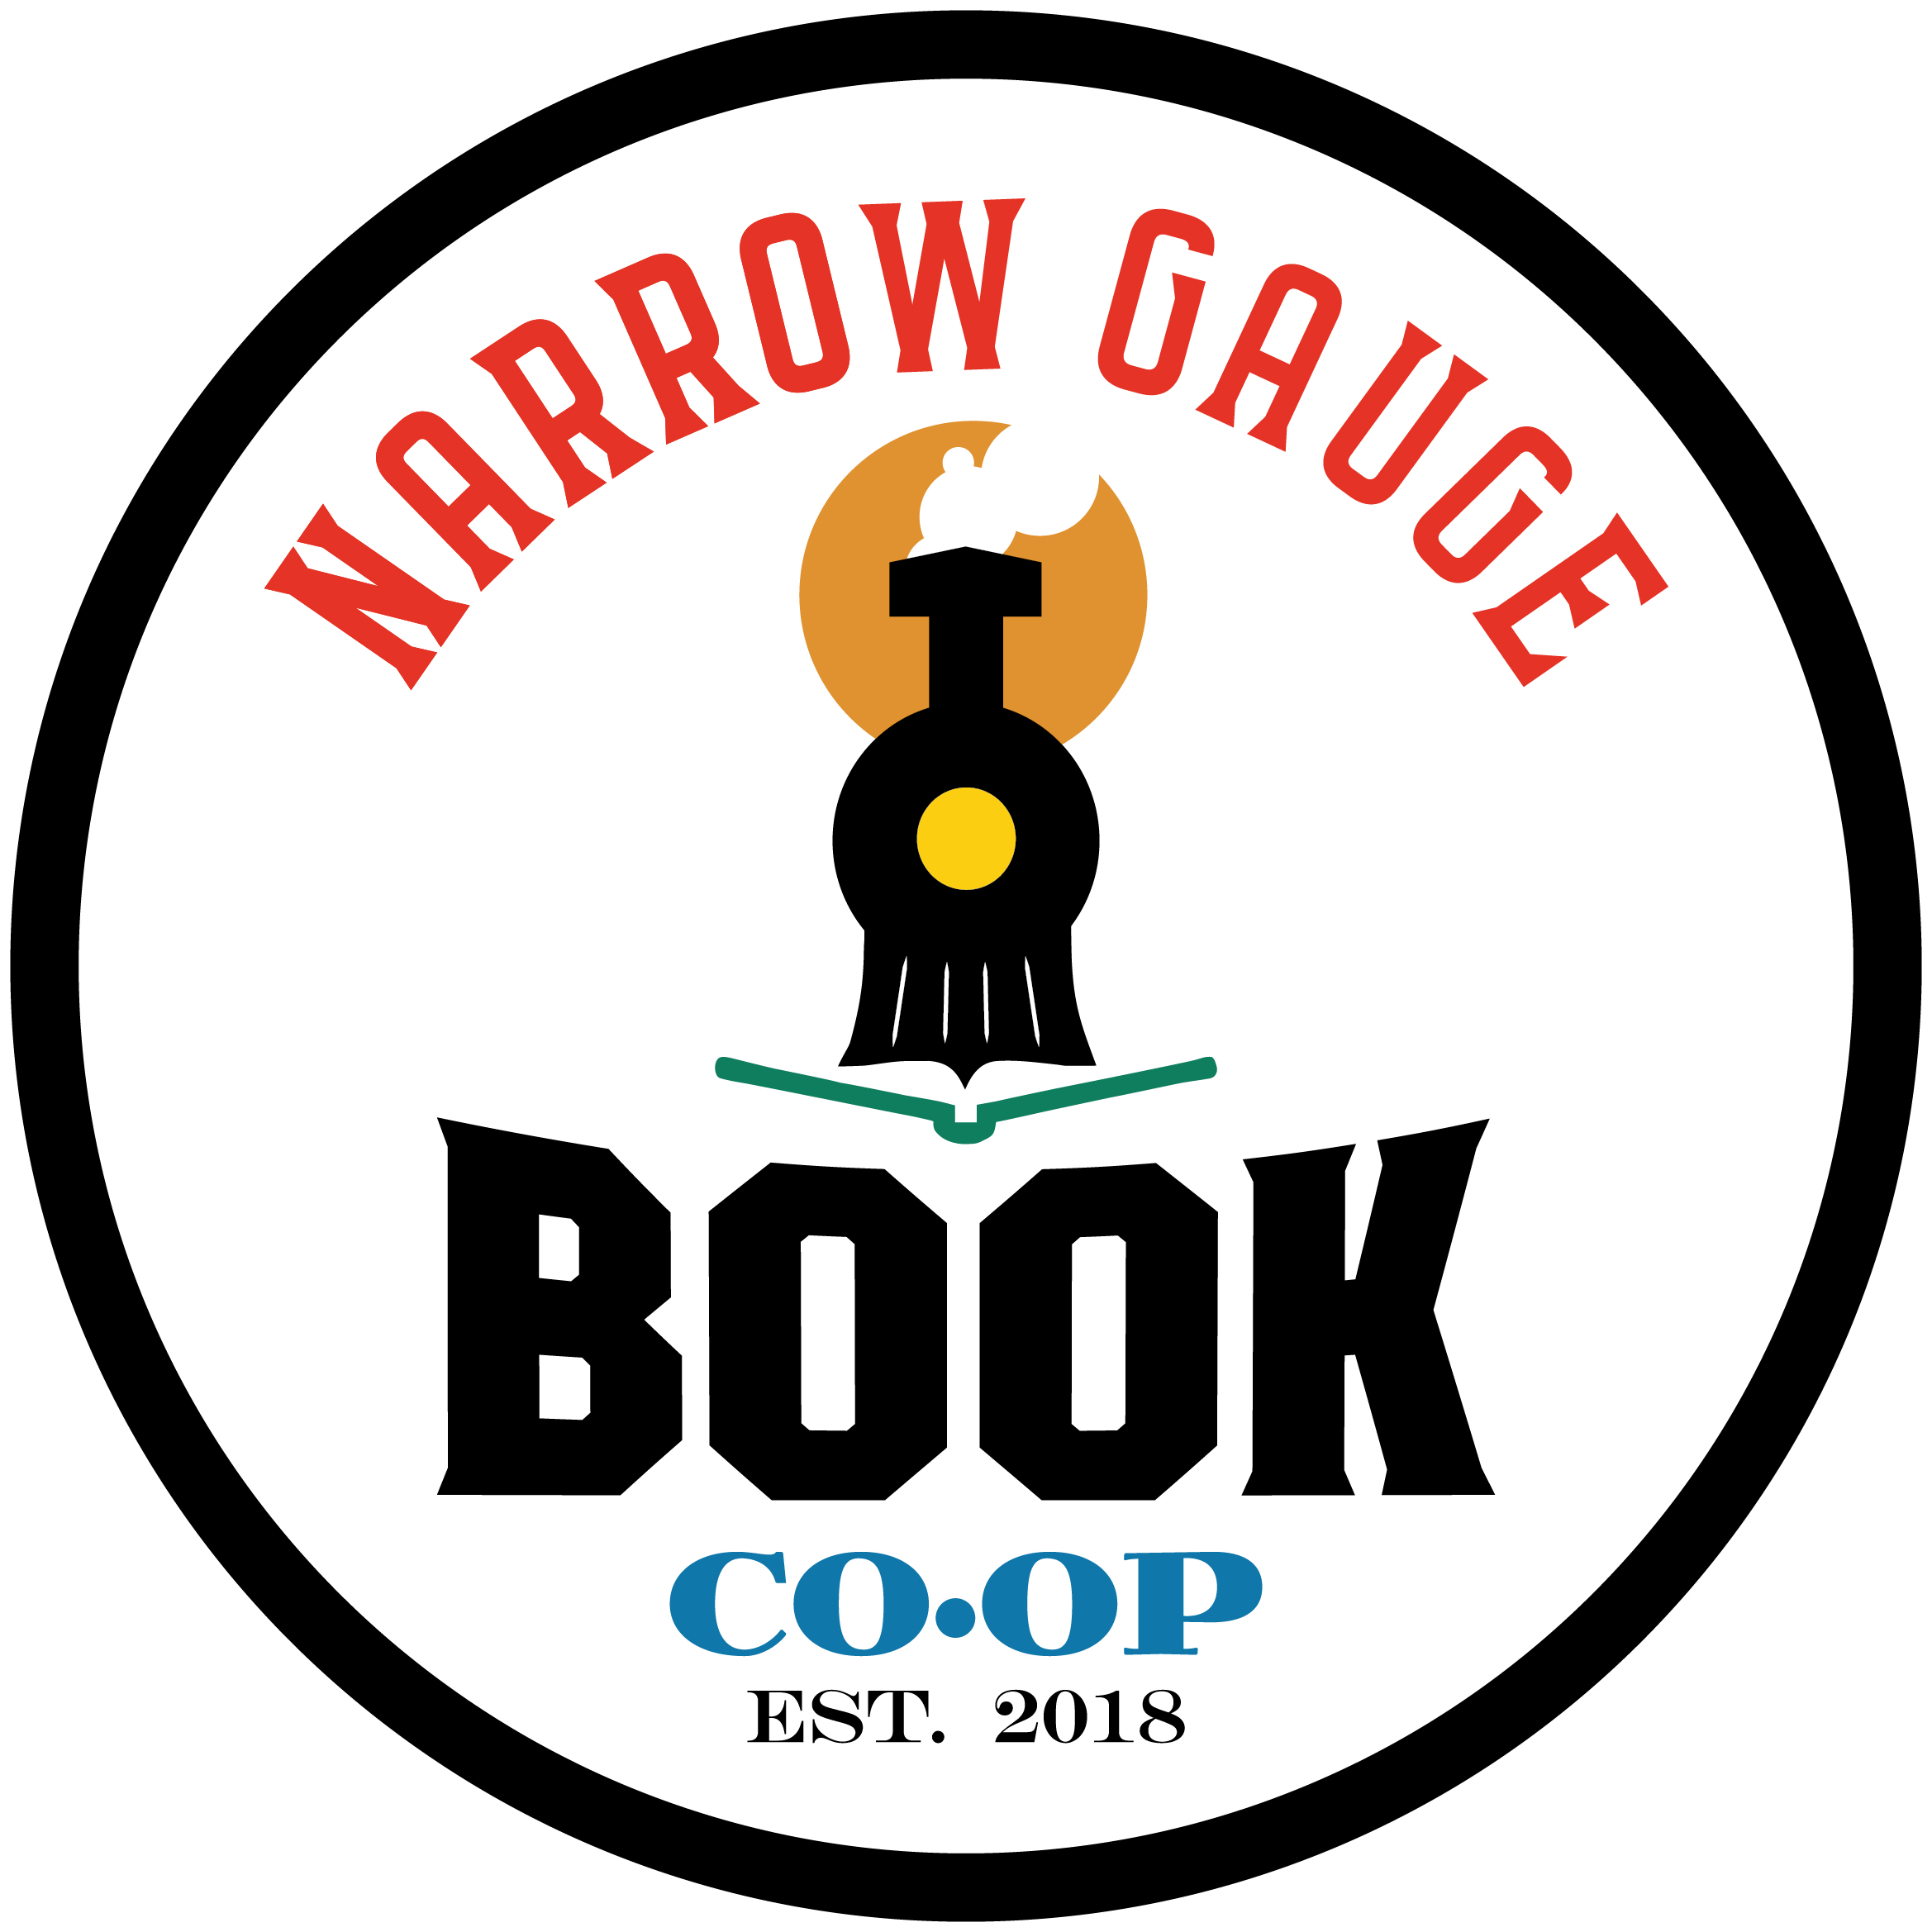 Narrow Gauge Book Co-op (Copy)